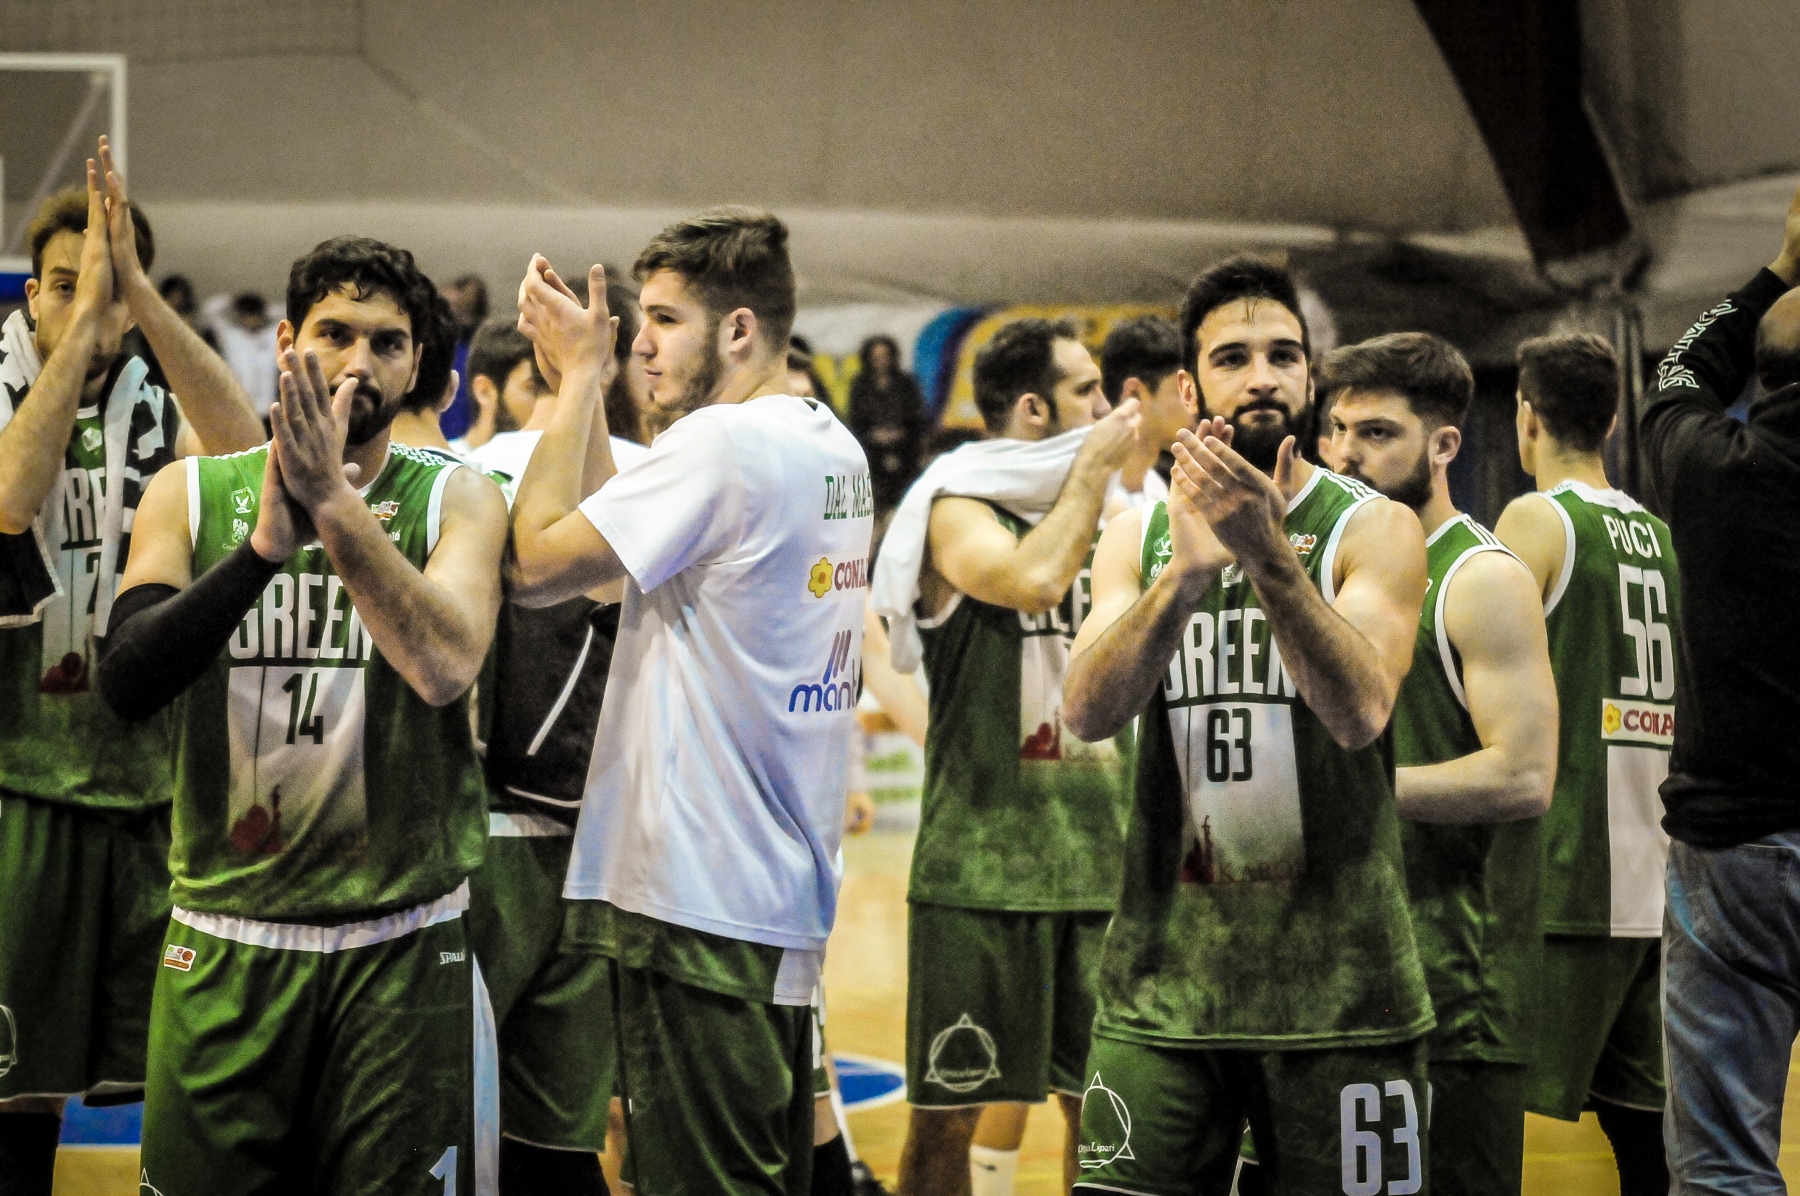 2019-03-31 SERIEB Virtus Valmontone - Green Basket Palermo